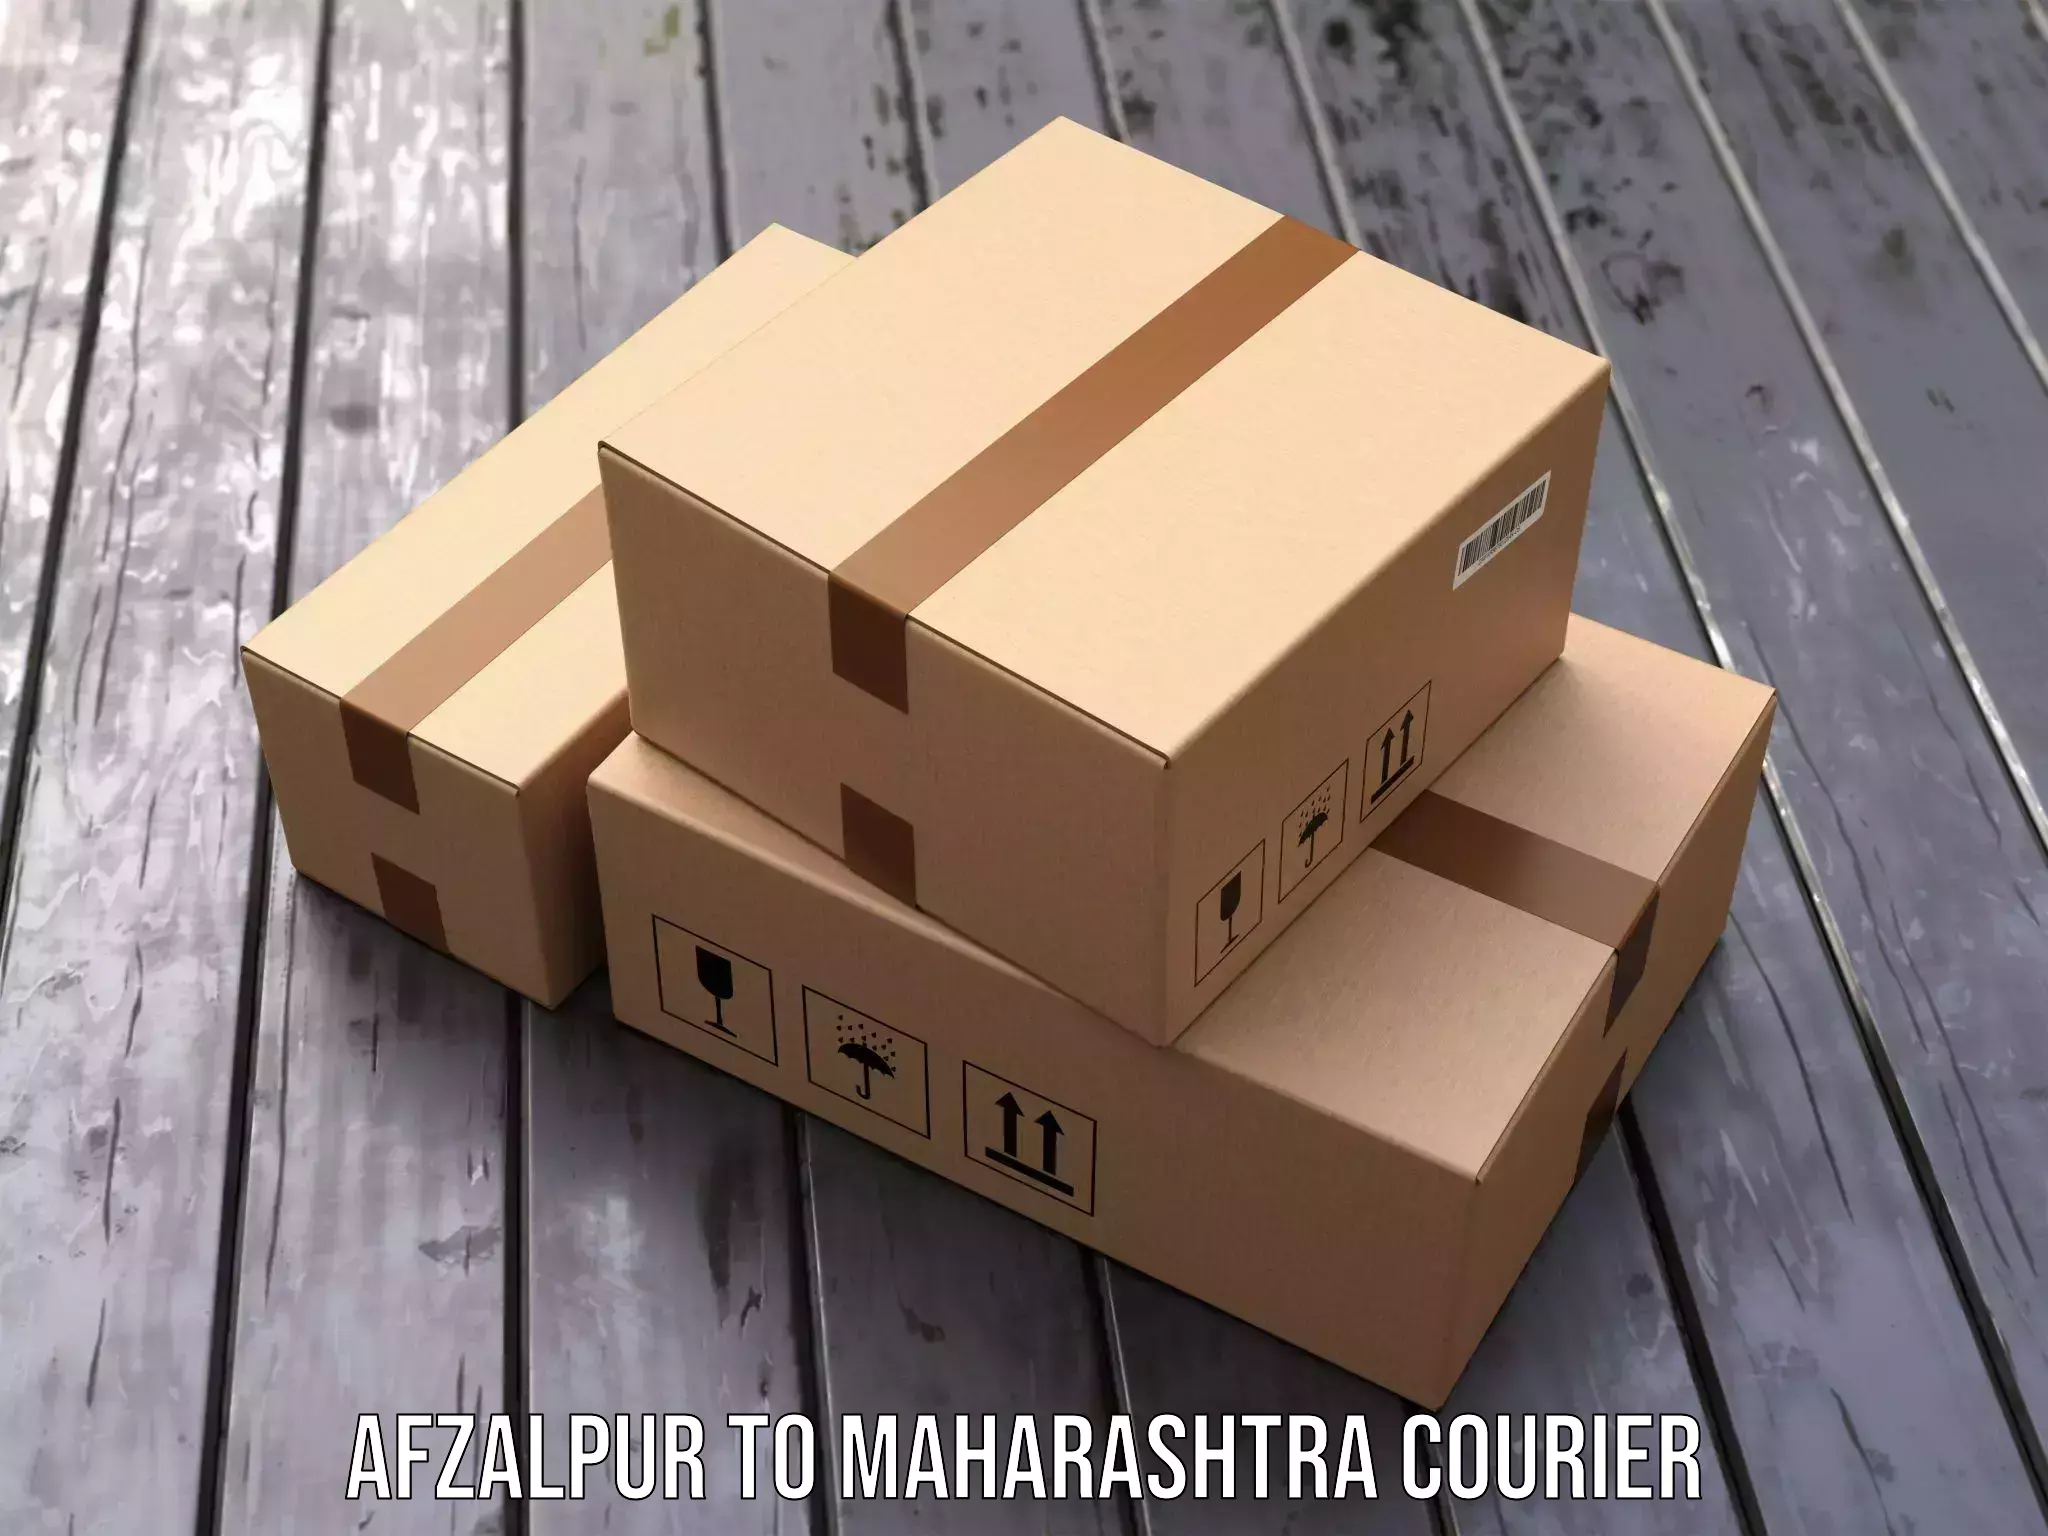 Supply chain efficiency Afzalpur to Maharashtra